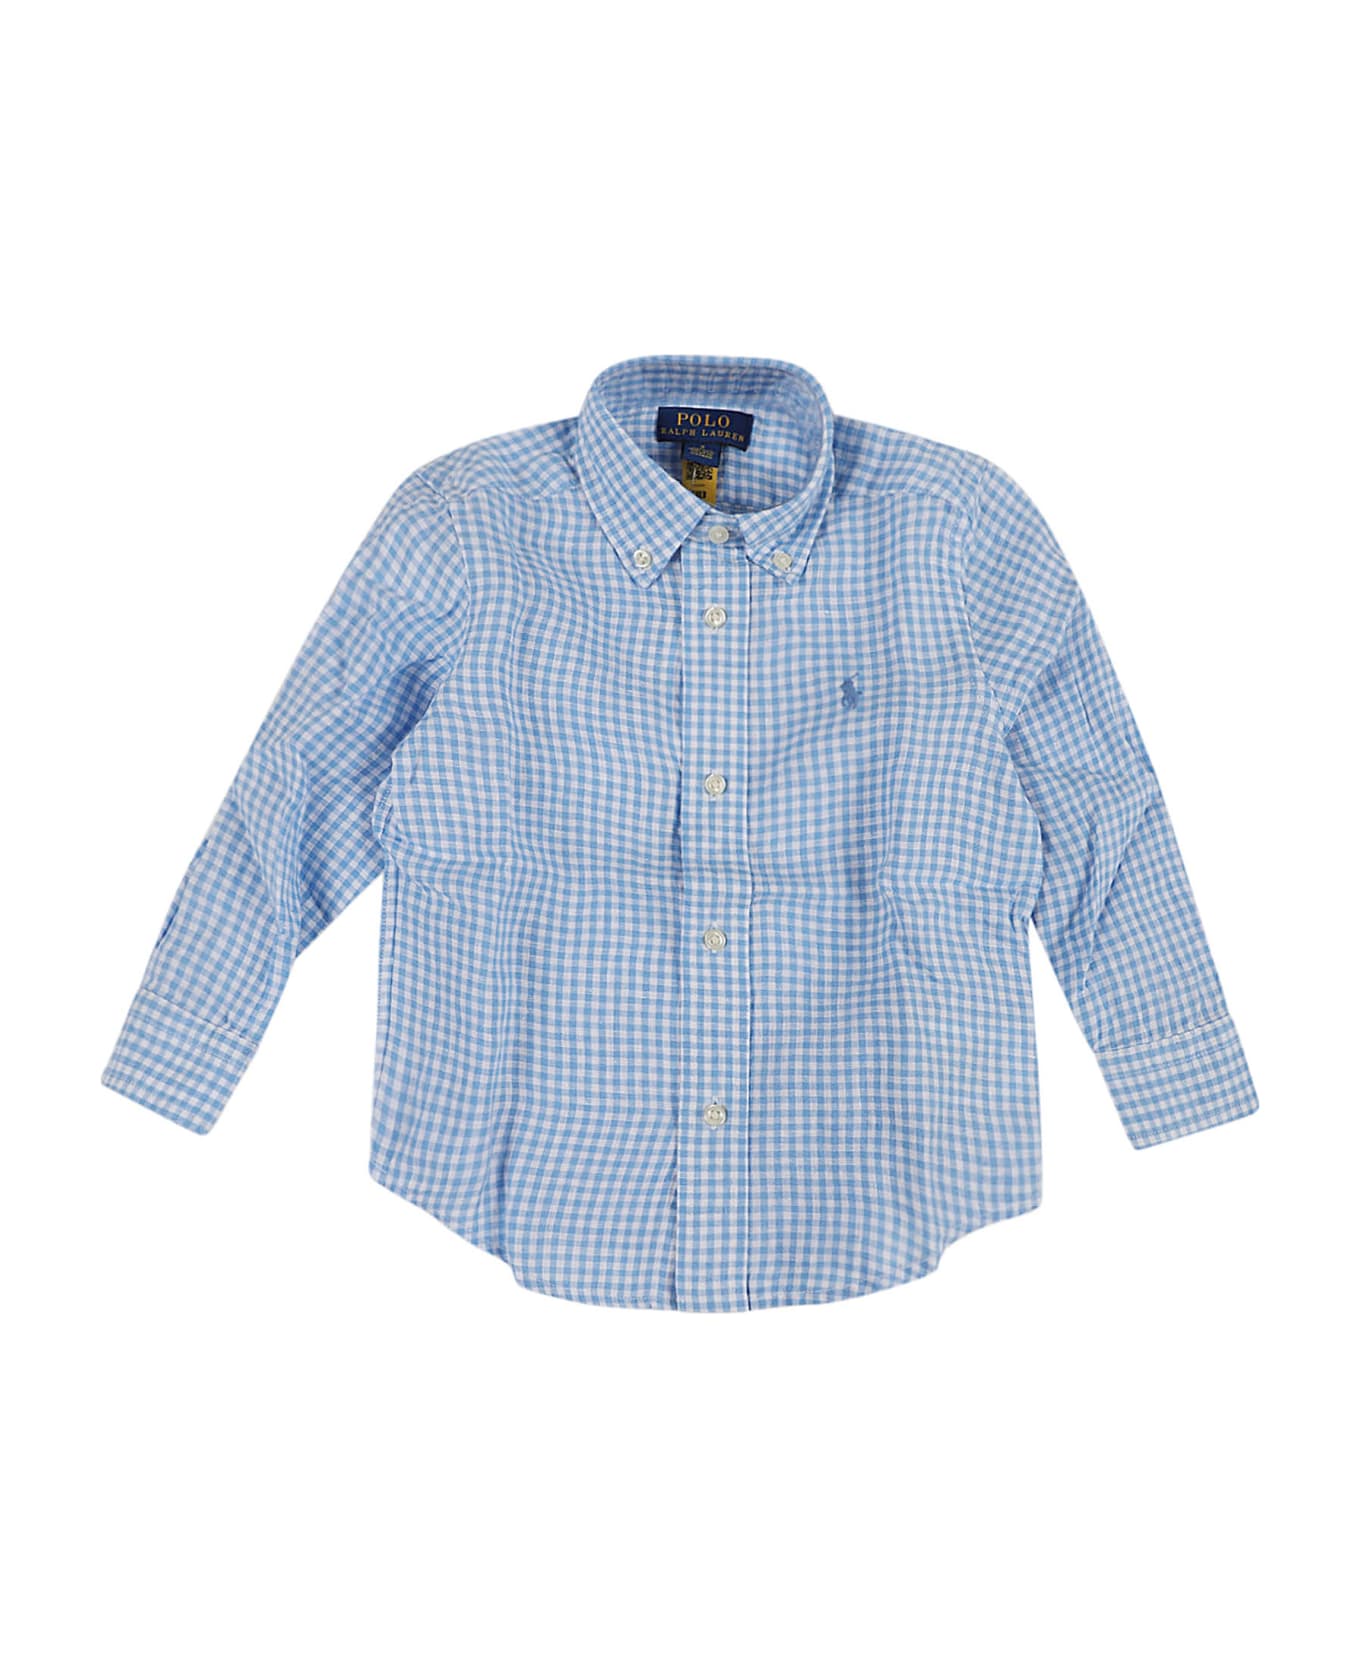 Ralph Lauren Clbdppc-shirts-sport Shirt - B Blue White